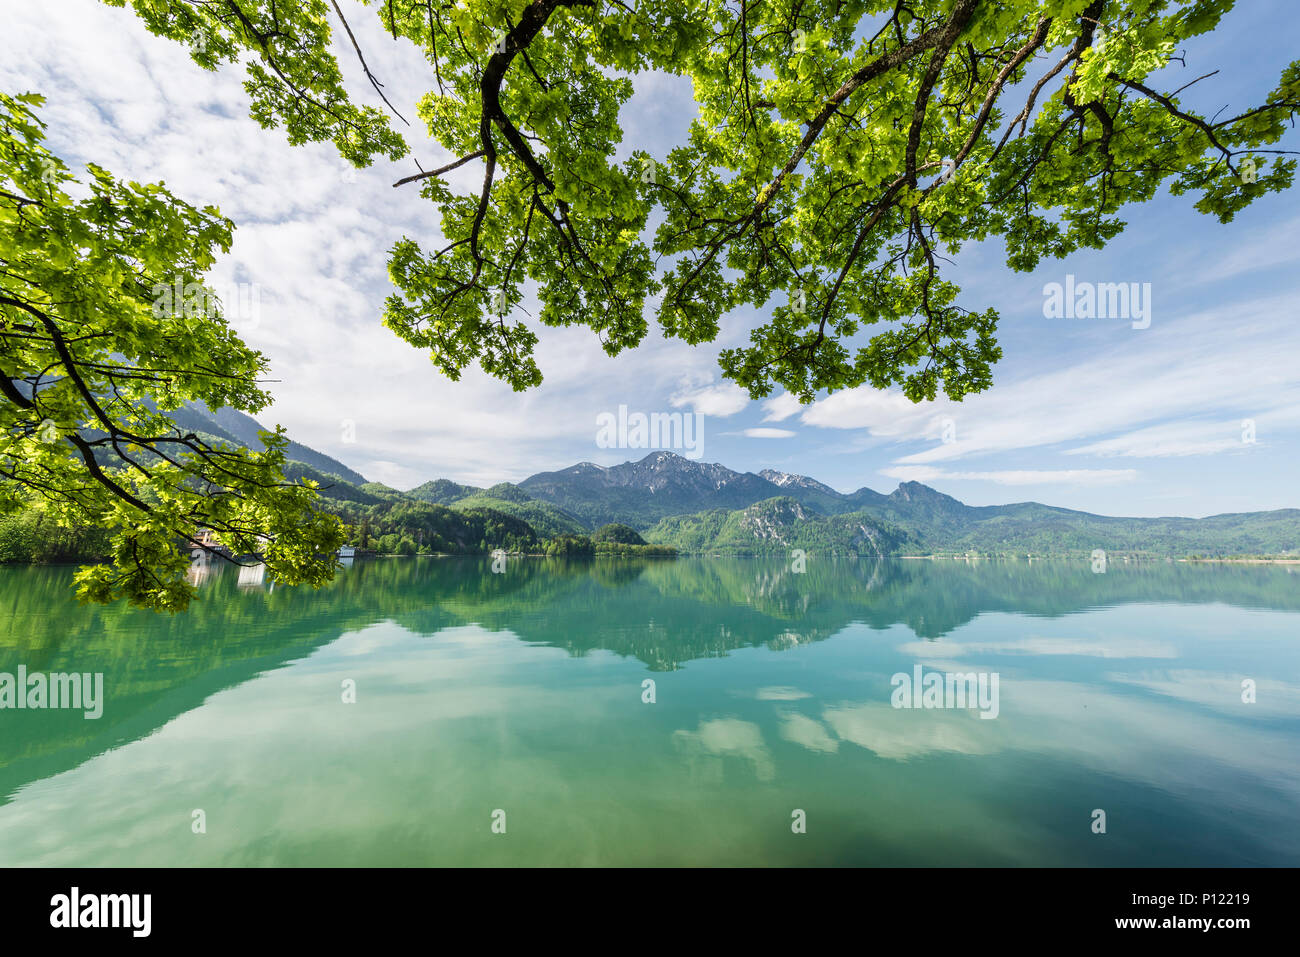 Colore verde brillante albero canopy di alberi sul panorama del Lago Kochelsee e Monte Herzogstand, Baviera, Germania Foto Stock